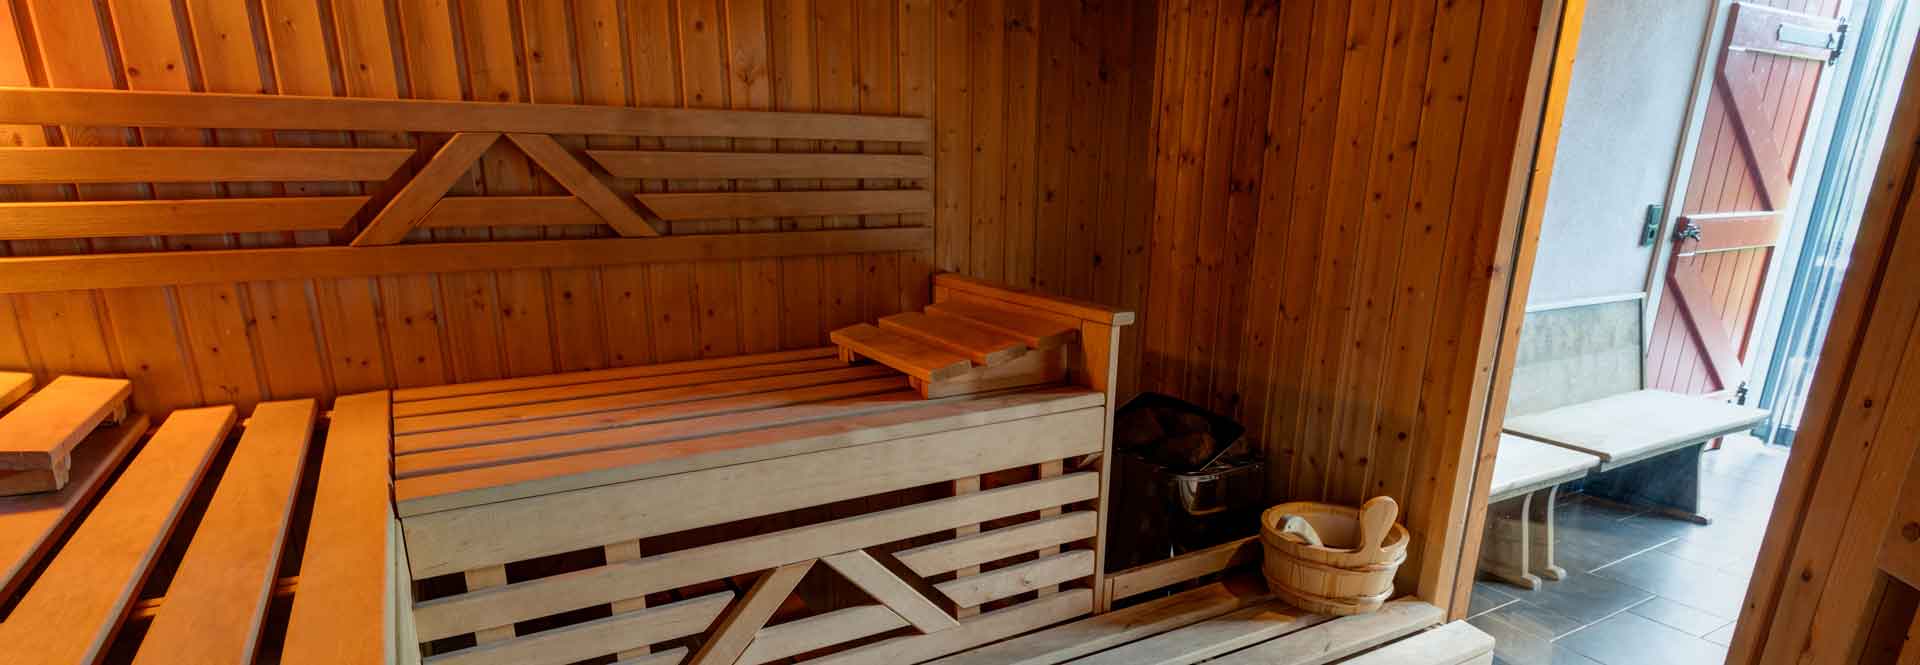 Sauna für 5 Personen und Whirlpool